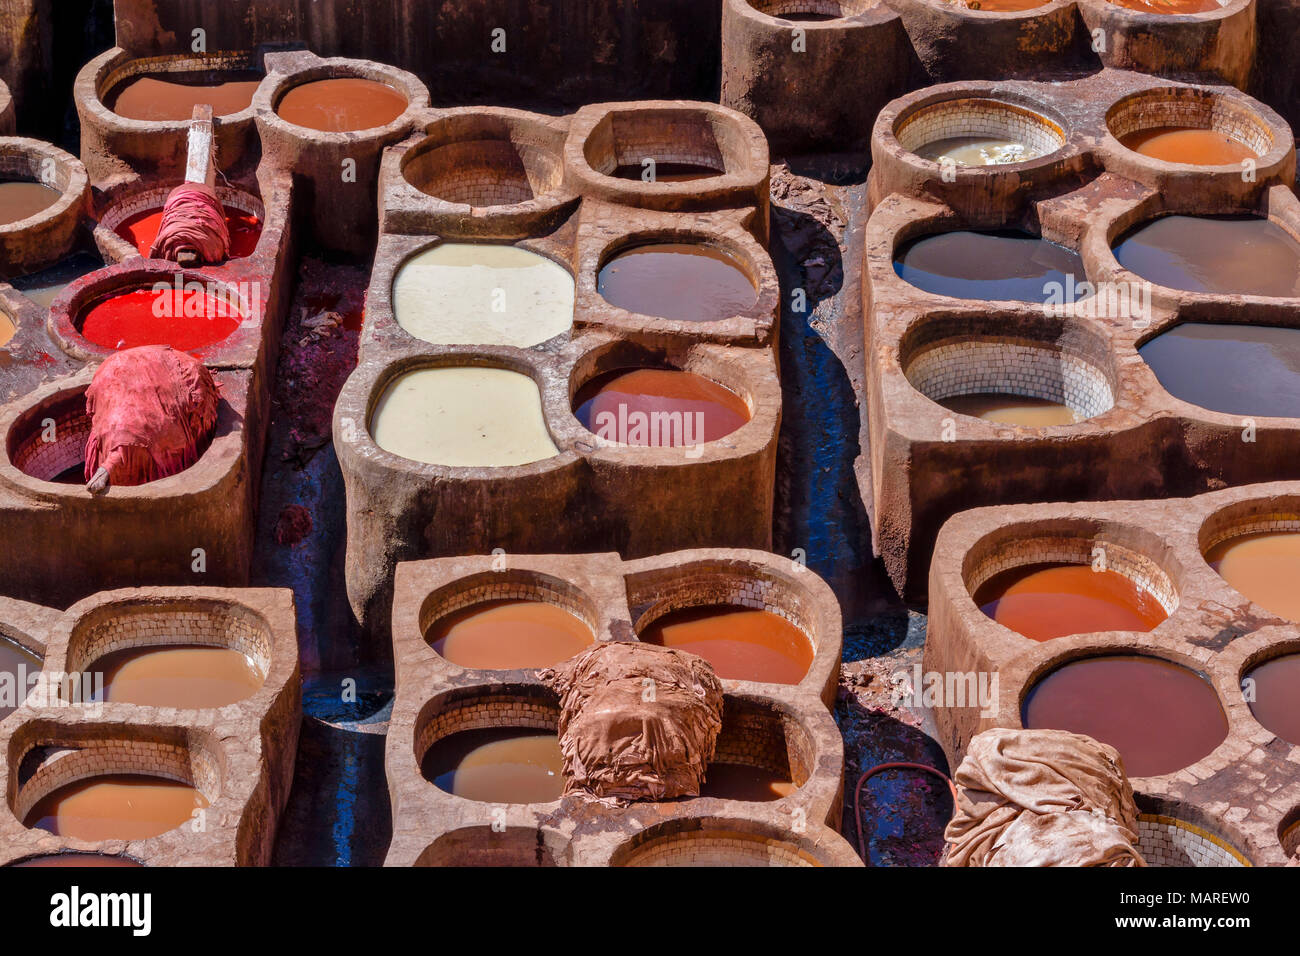 Marokko Fes Medina Souk CHOUWARA GERBEREI GERBEREIEN RUNDSCHREIBEN Fässer oder Tanks mit farbigen FARBSTOFFE MIT DER BLENDET DIE VIELEN FARBEN IN DEN TANKS Stockfoto